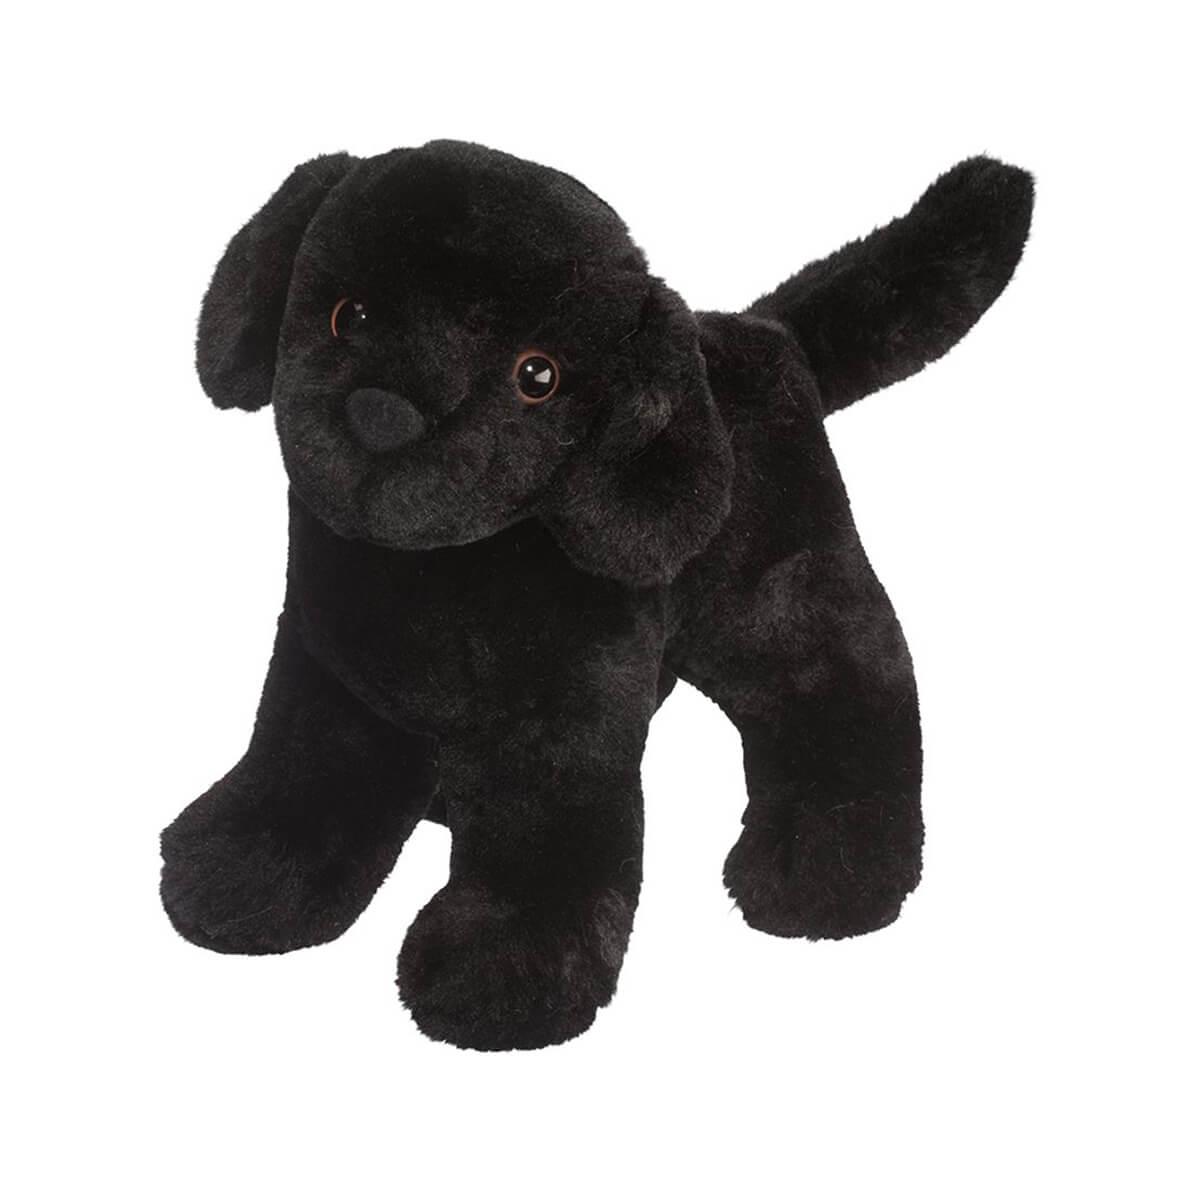 Harko the Black German Shepherd Plush Toy